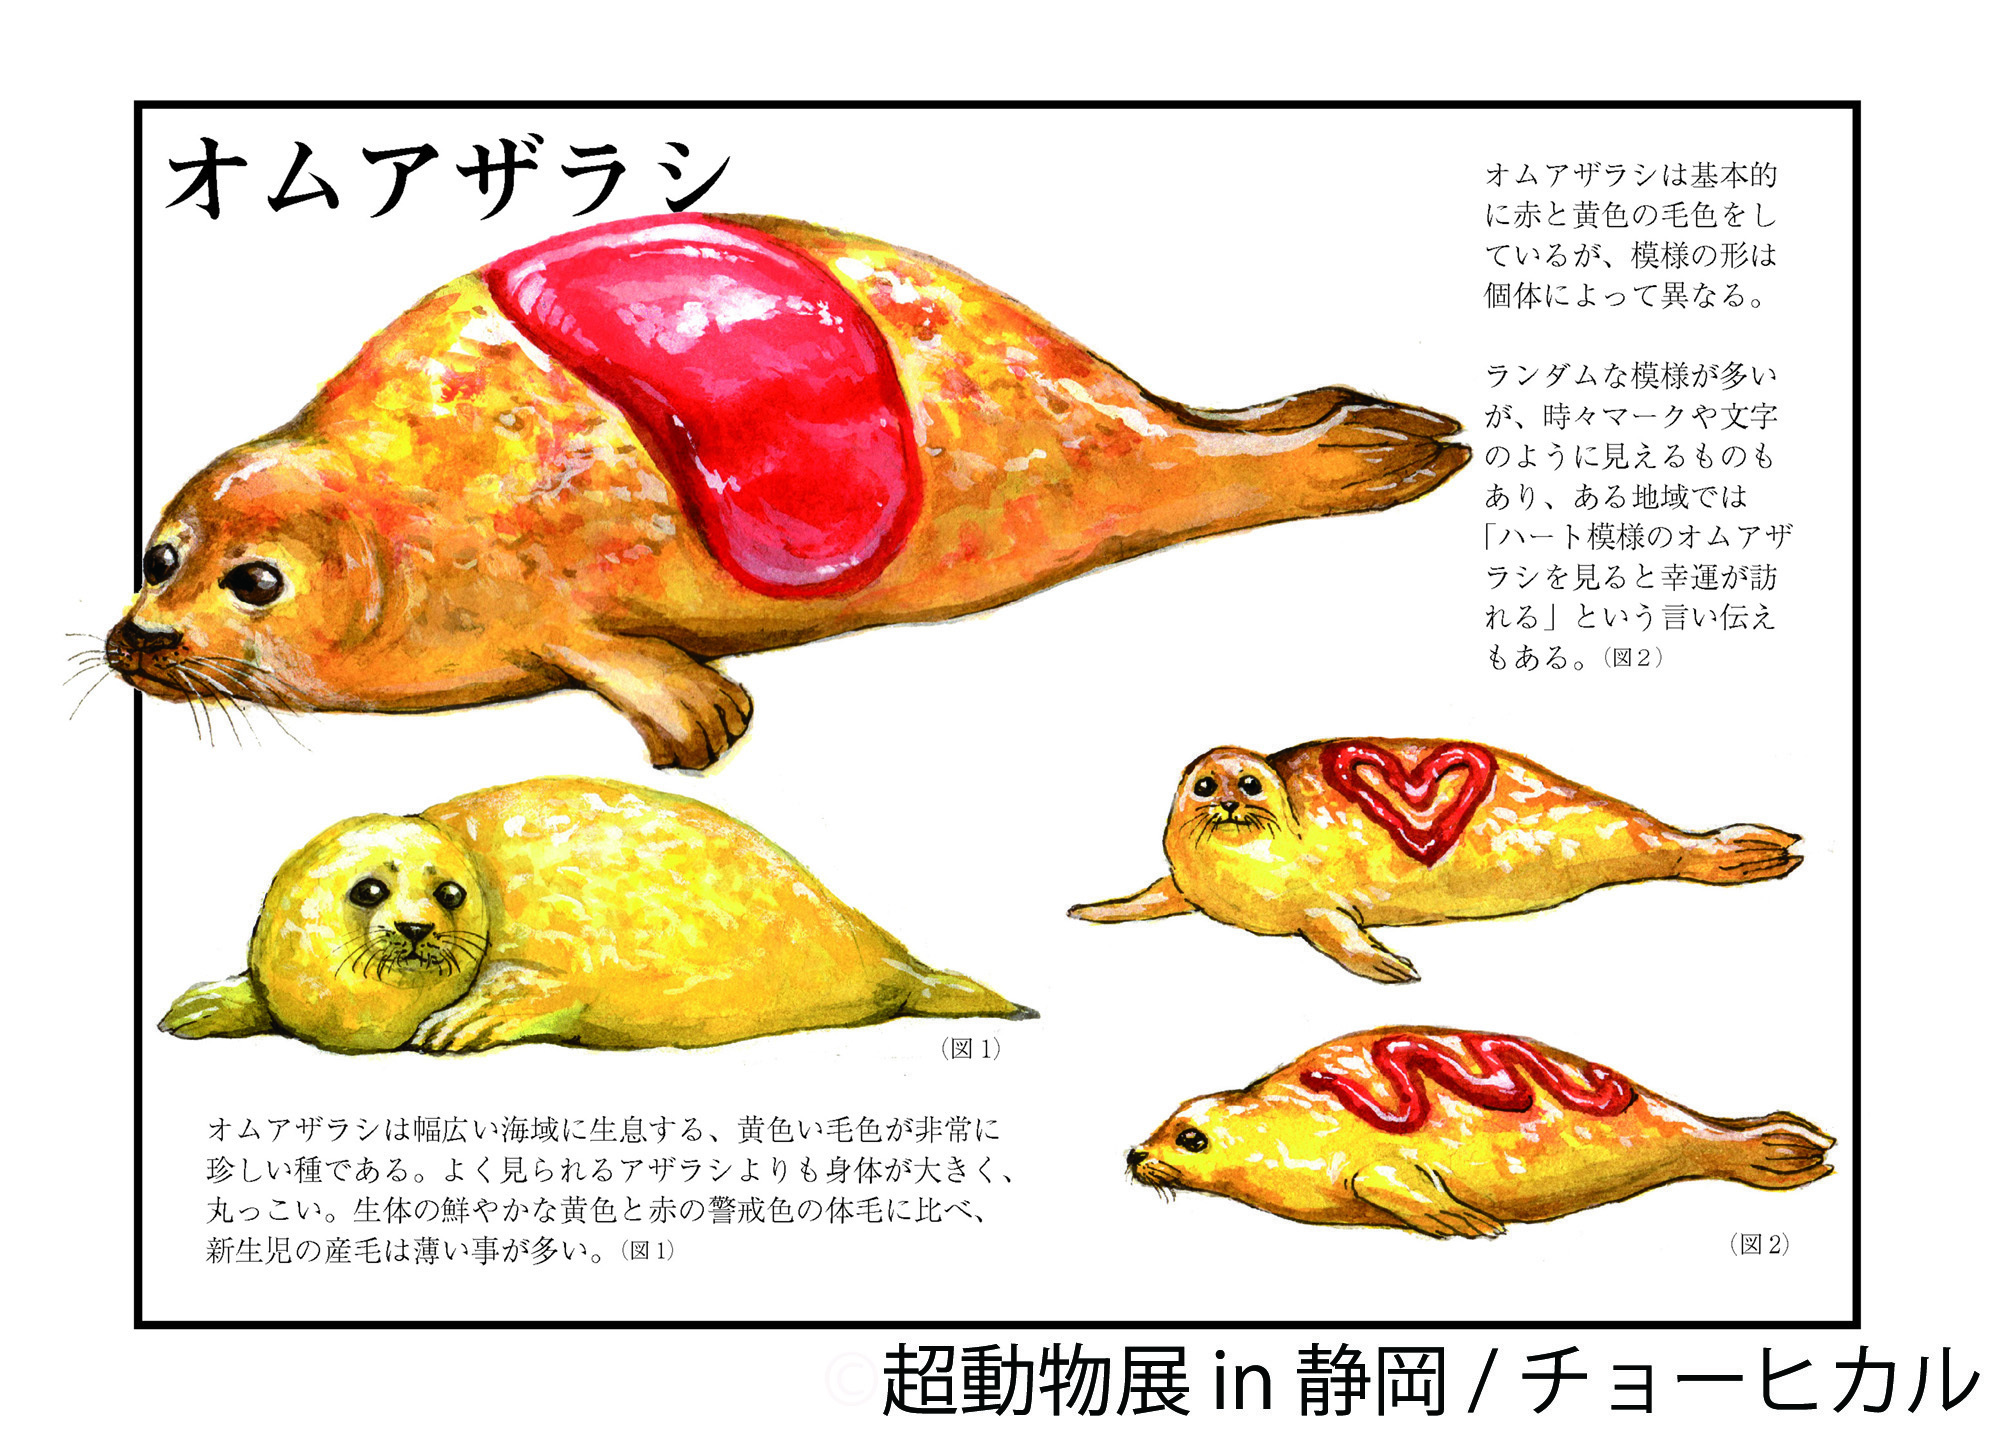 空想 リアルが凝縮 チョーヒカル 超動物展 8 17 開催 静岡 ピザのような魚や 世界的技術のボディペインティングなど 株式会社baconのプレスリリース